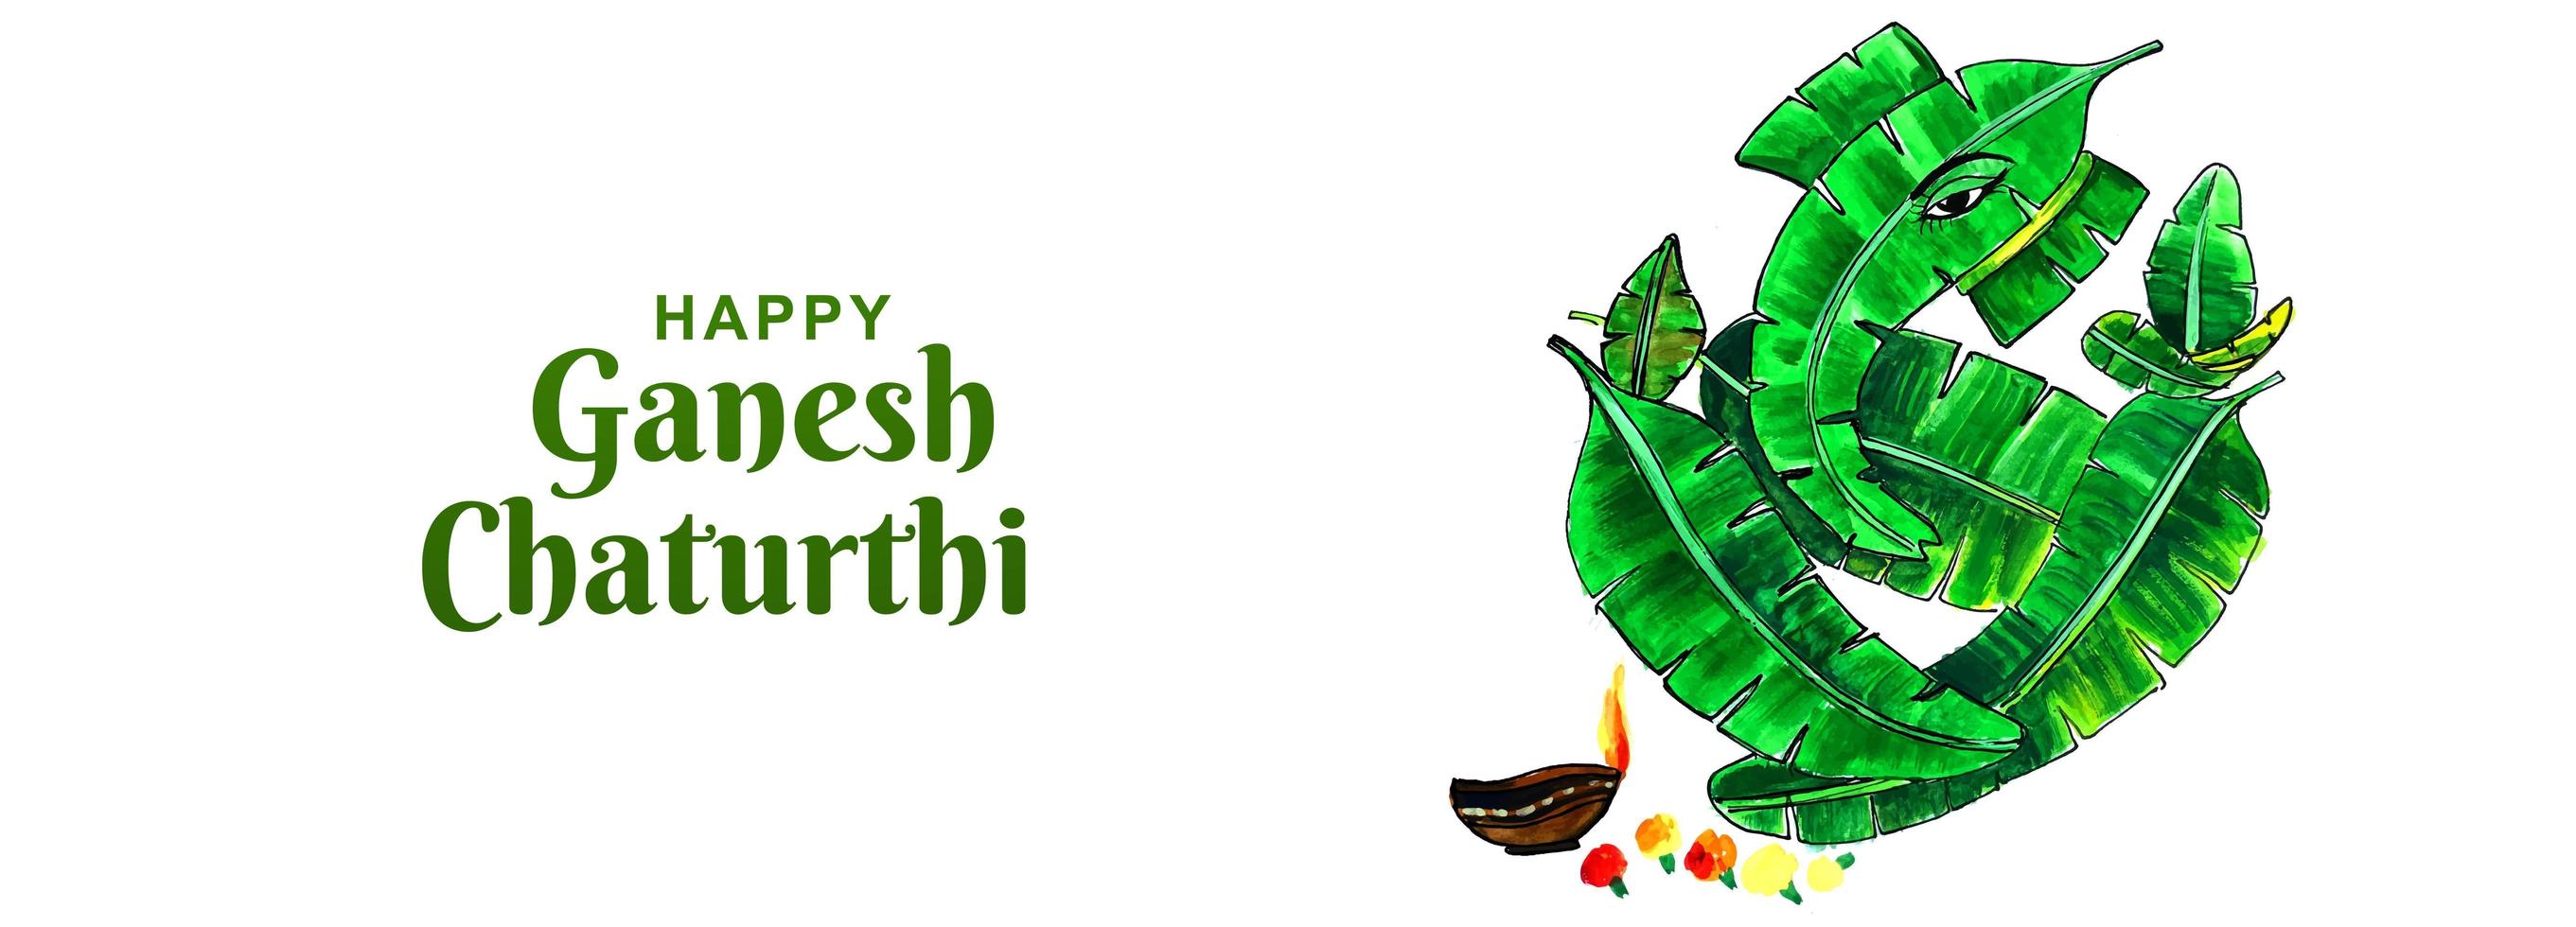 felice ganesh chaturthi utsav leaf elephantfestival card banner vettore